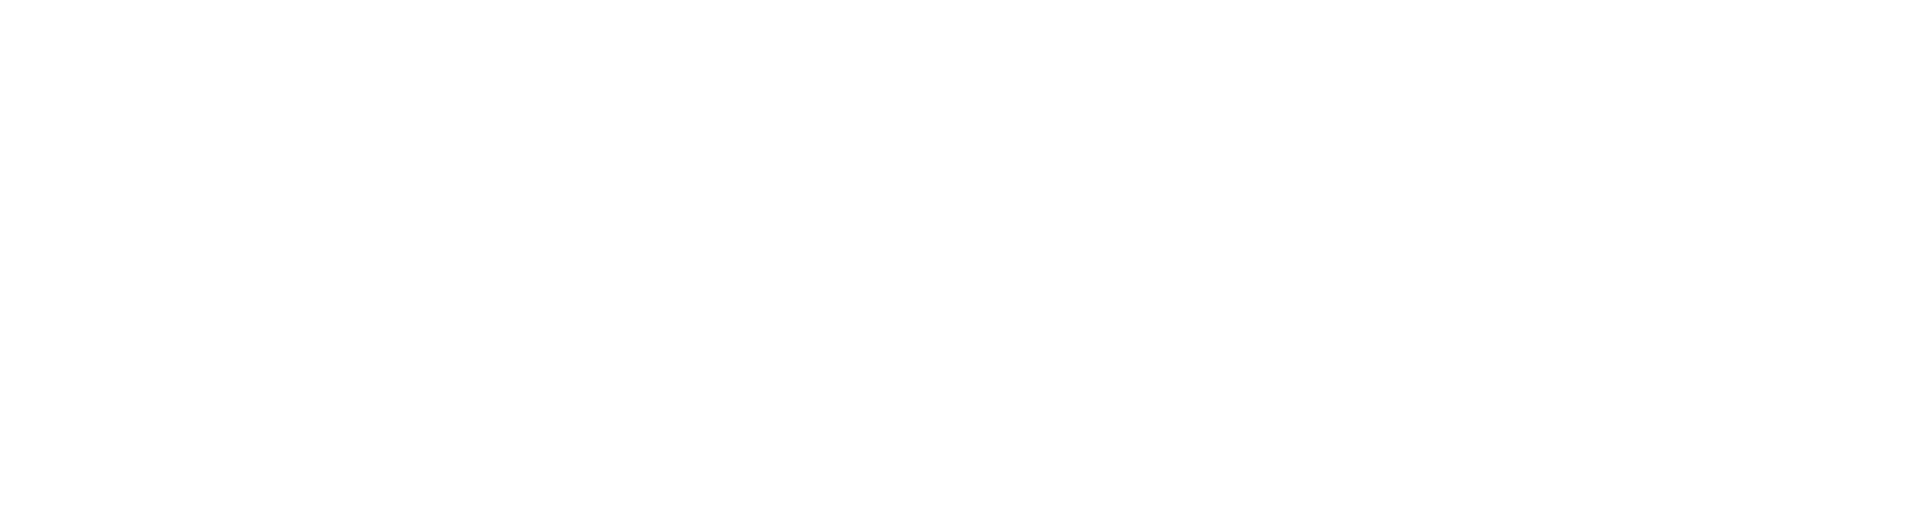 (c) Rk-designsolutions.com